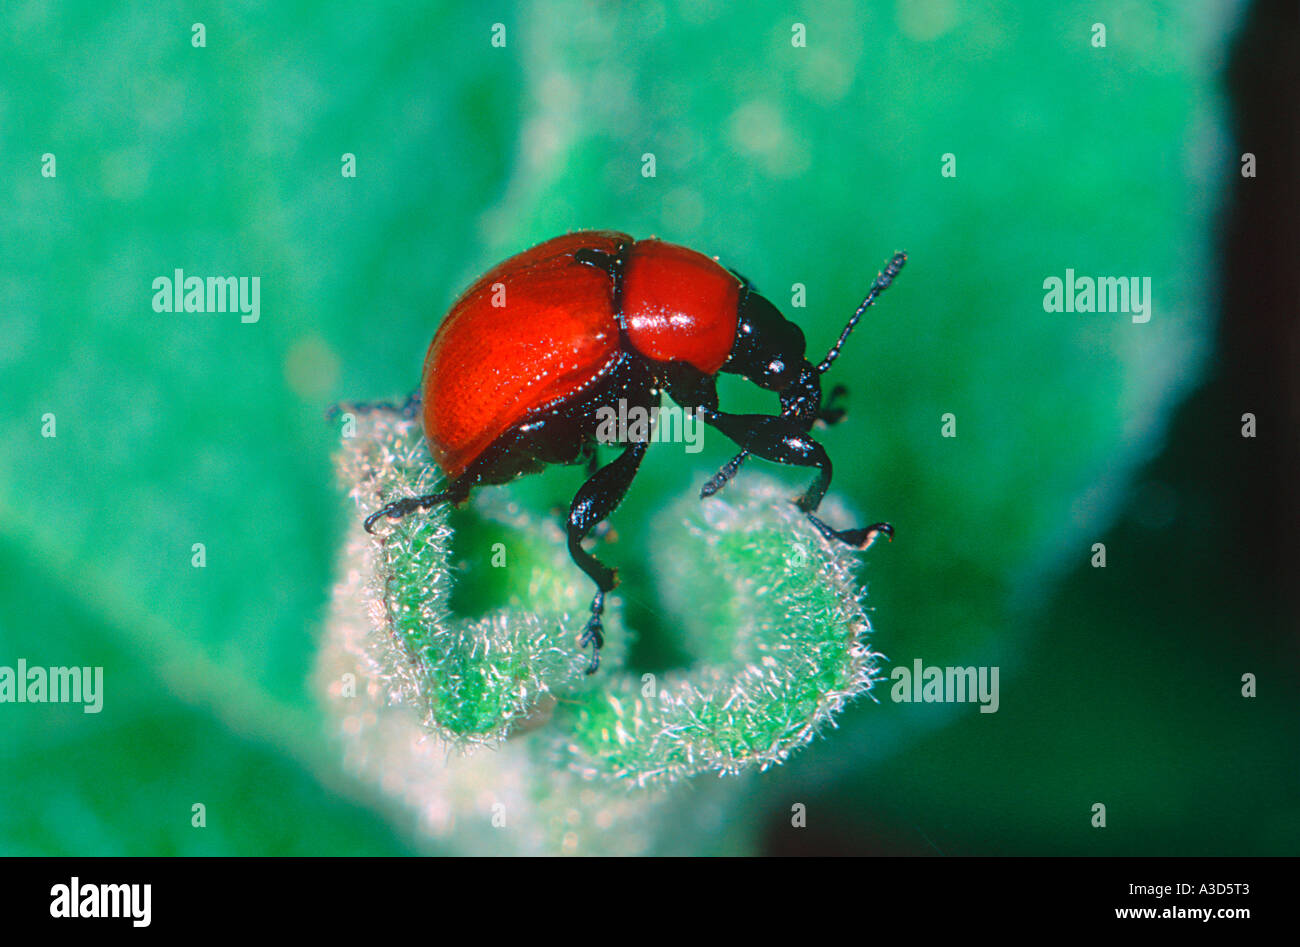 Weevil, Attelabus sp. On leaf Stock Photo